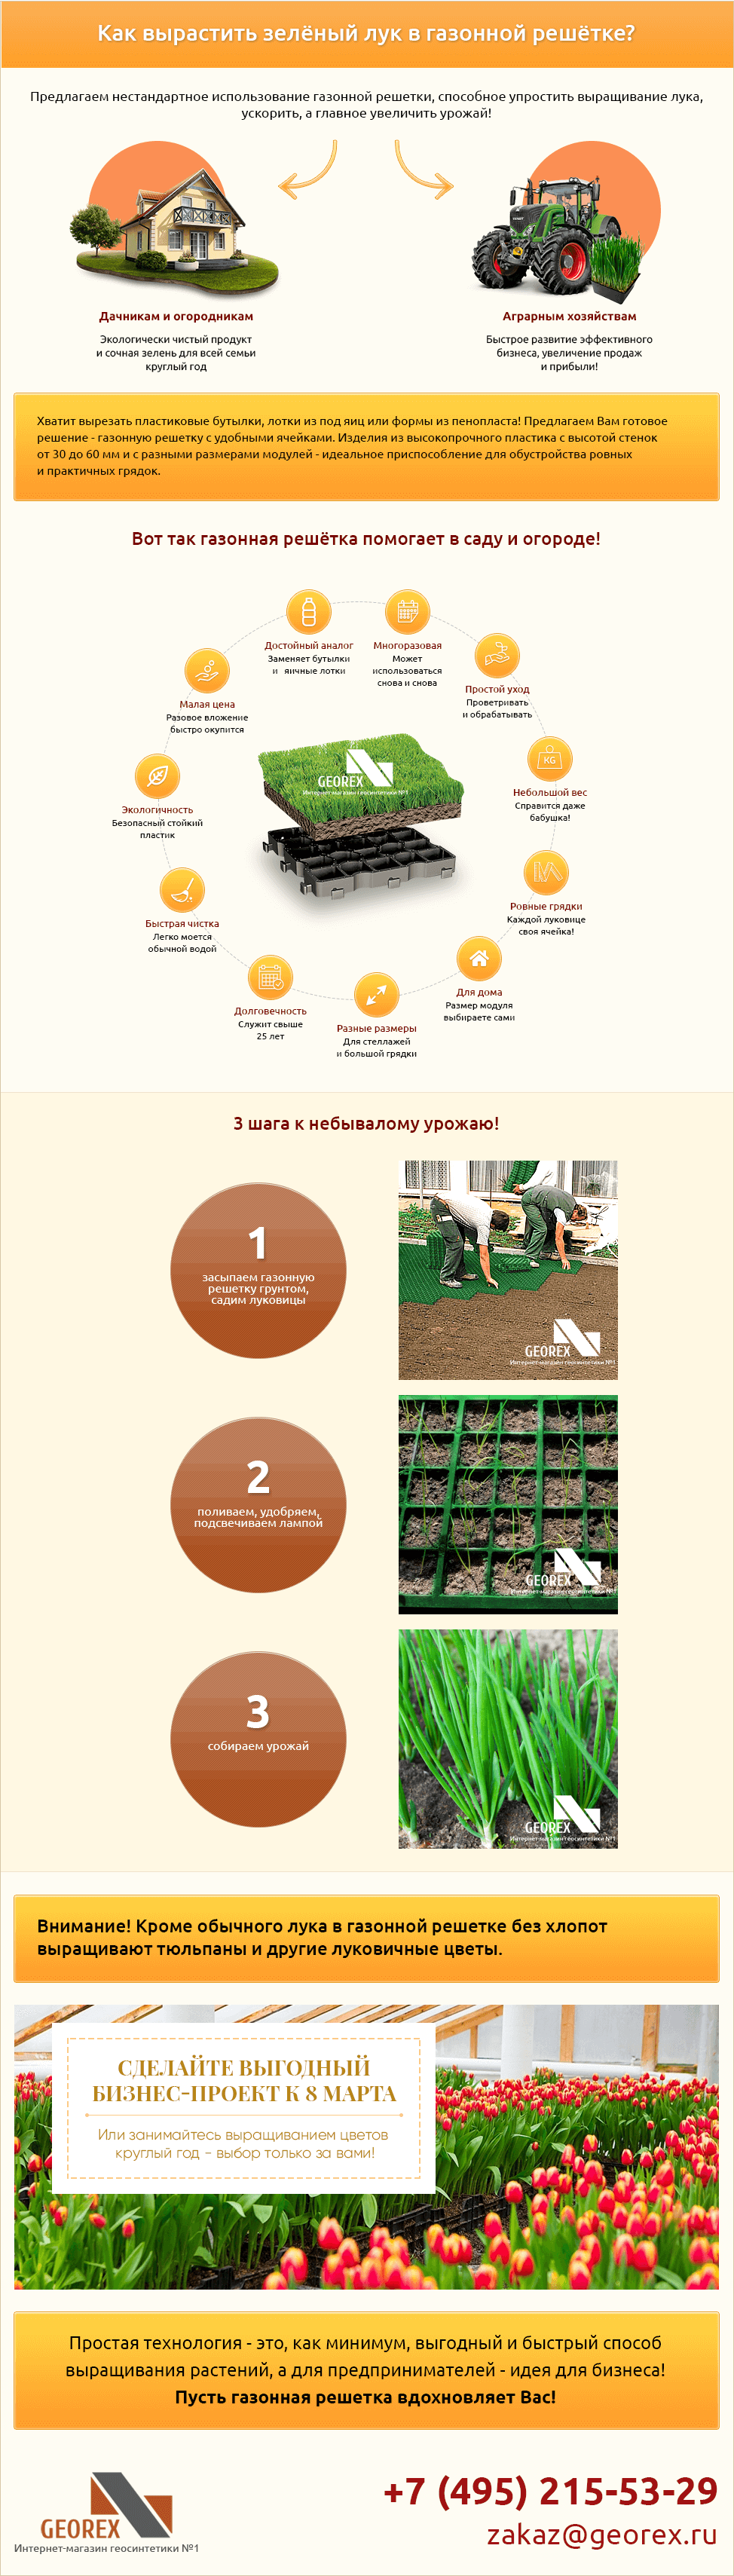 выращивание лука в газонной решетке